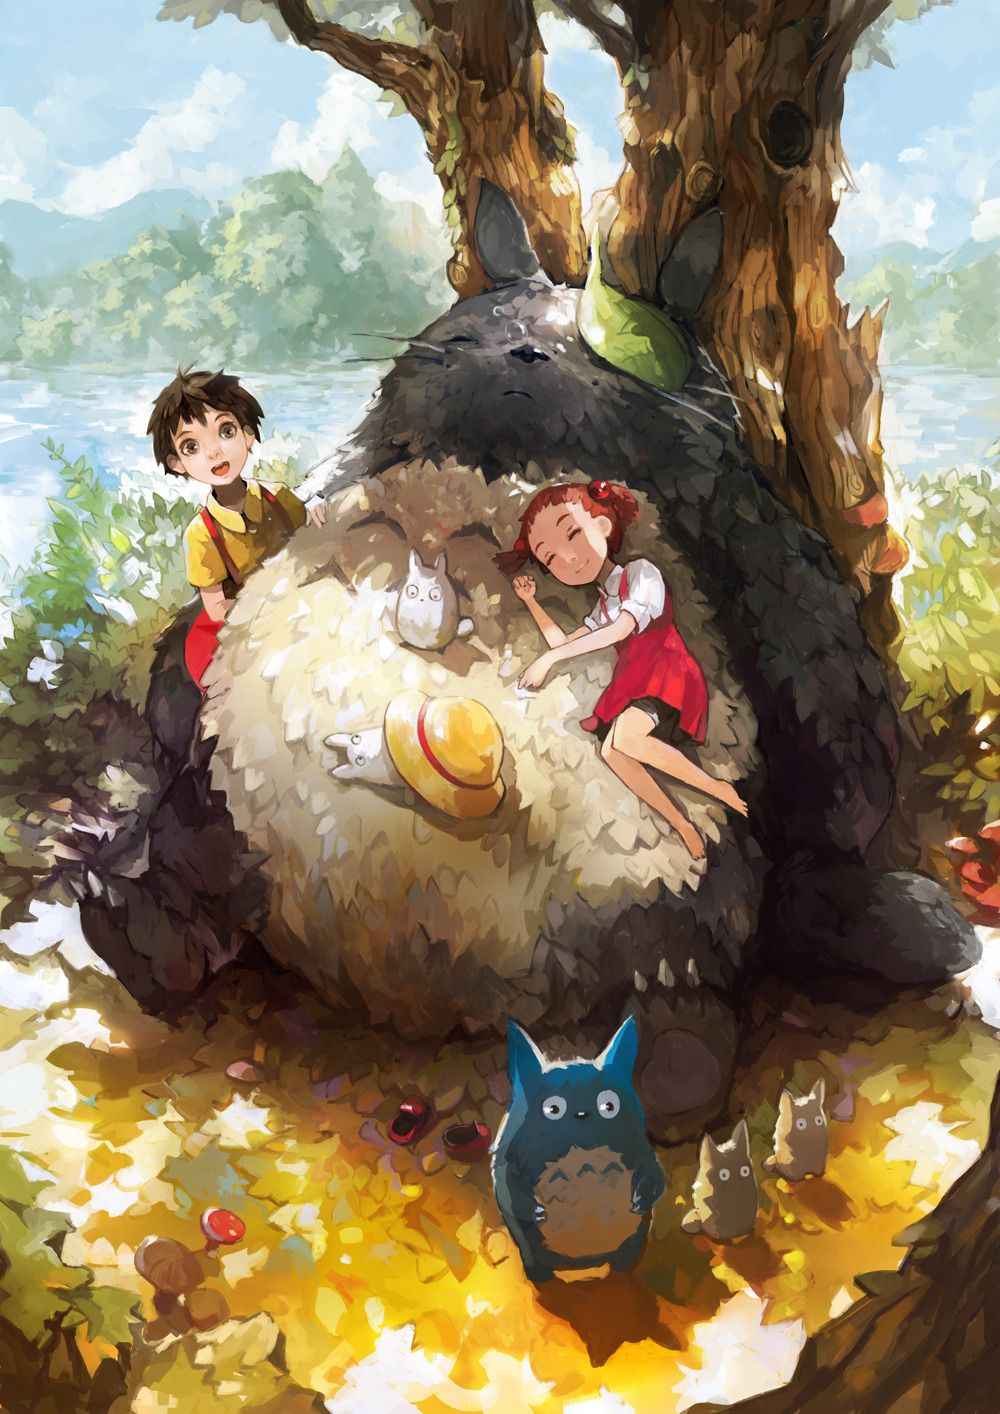 Geek Art Gallery: Illustration: Studio Ghibli Movies